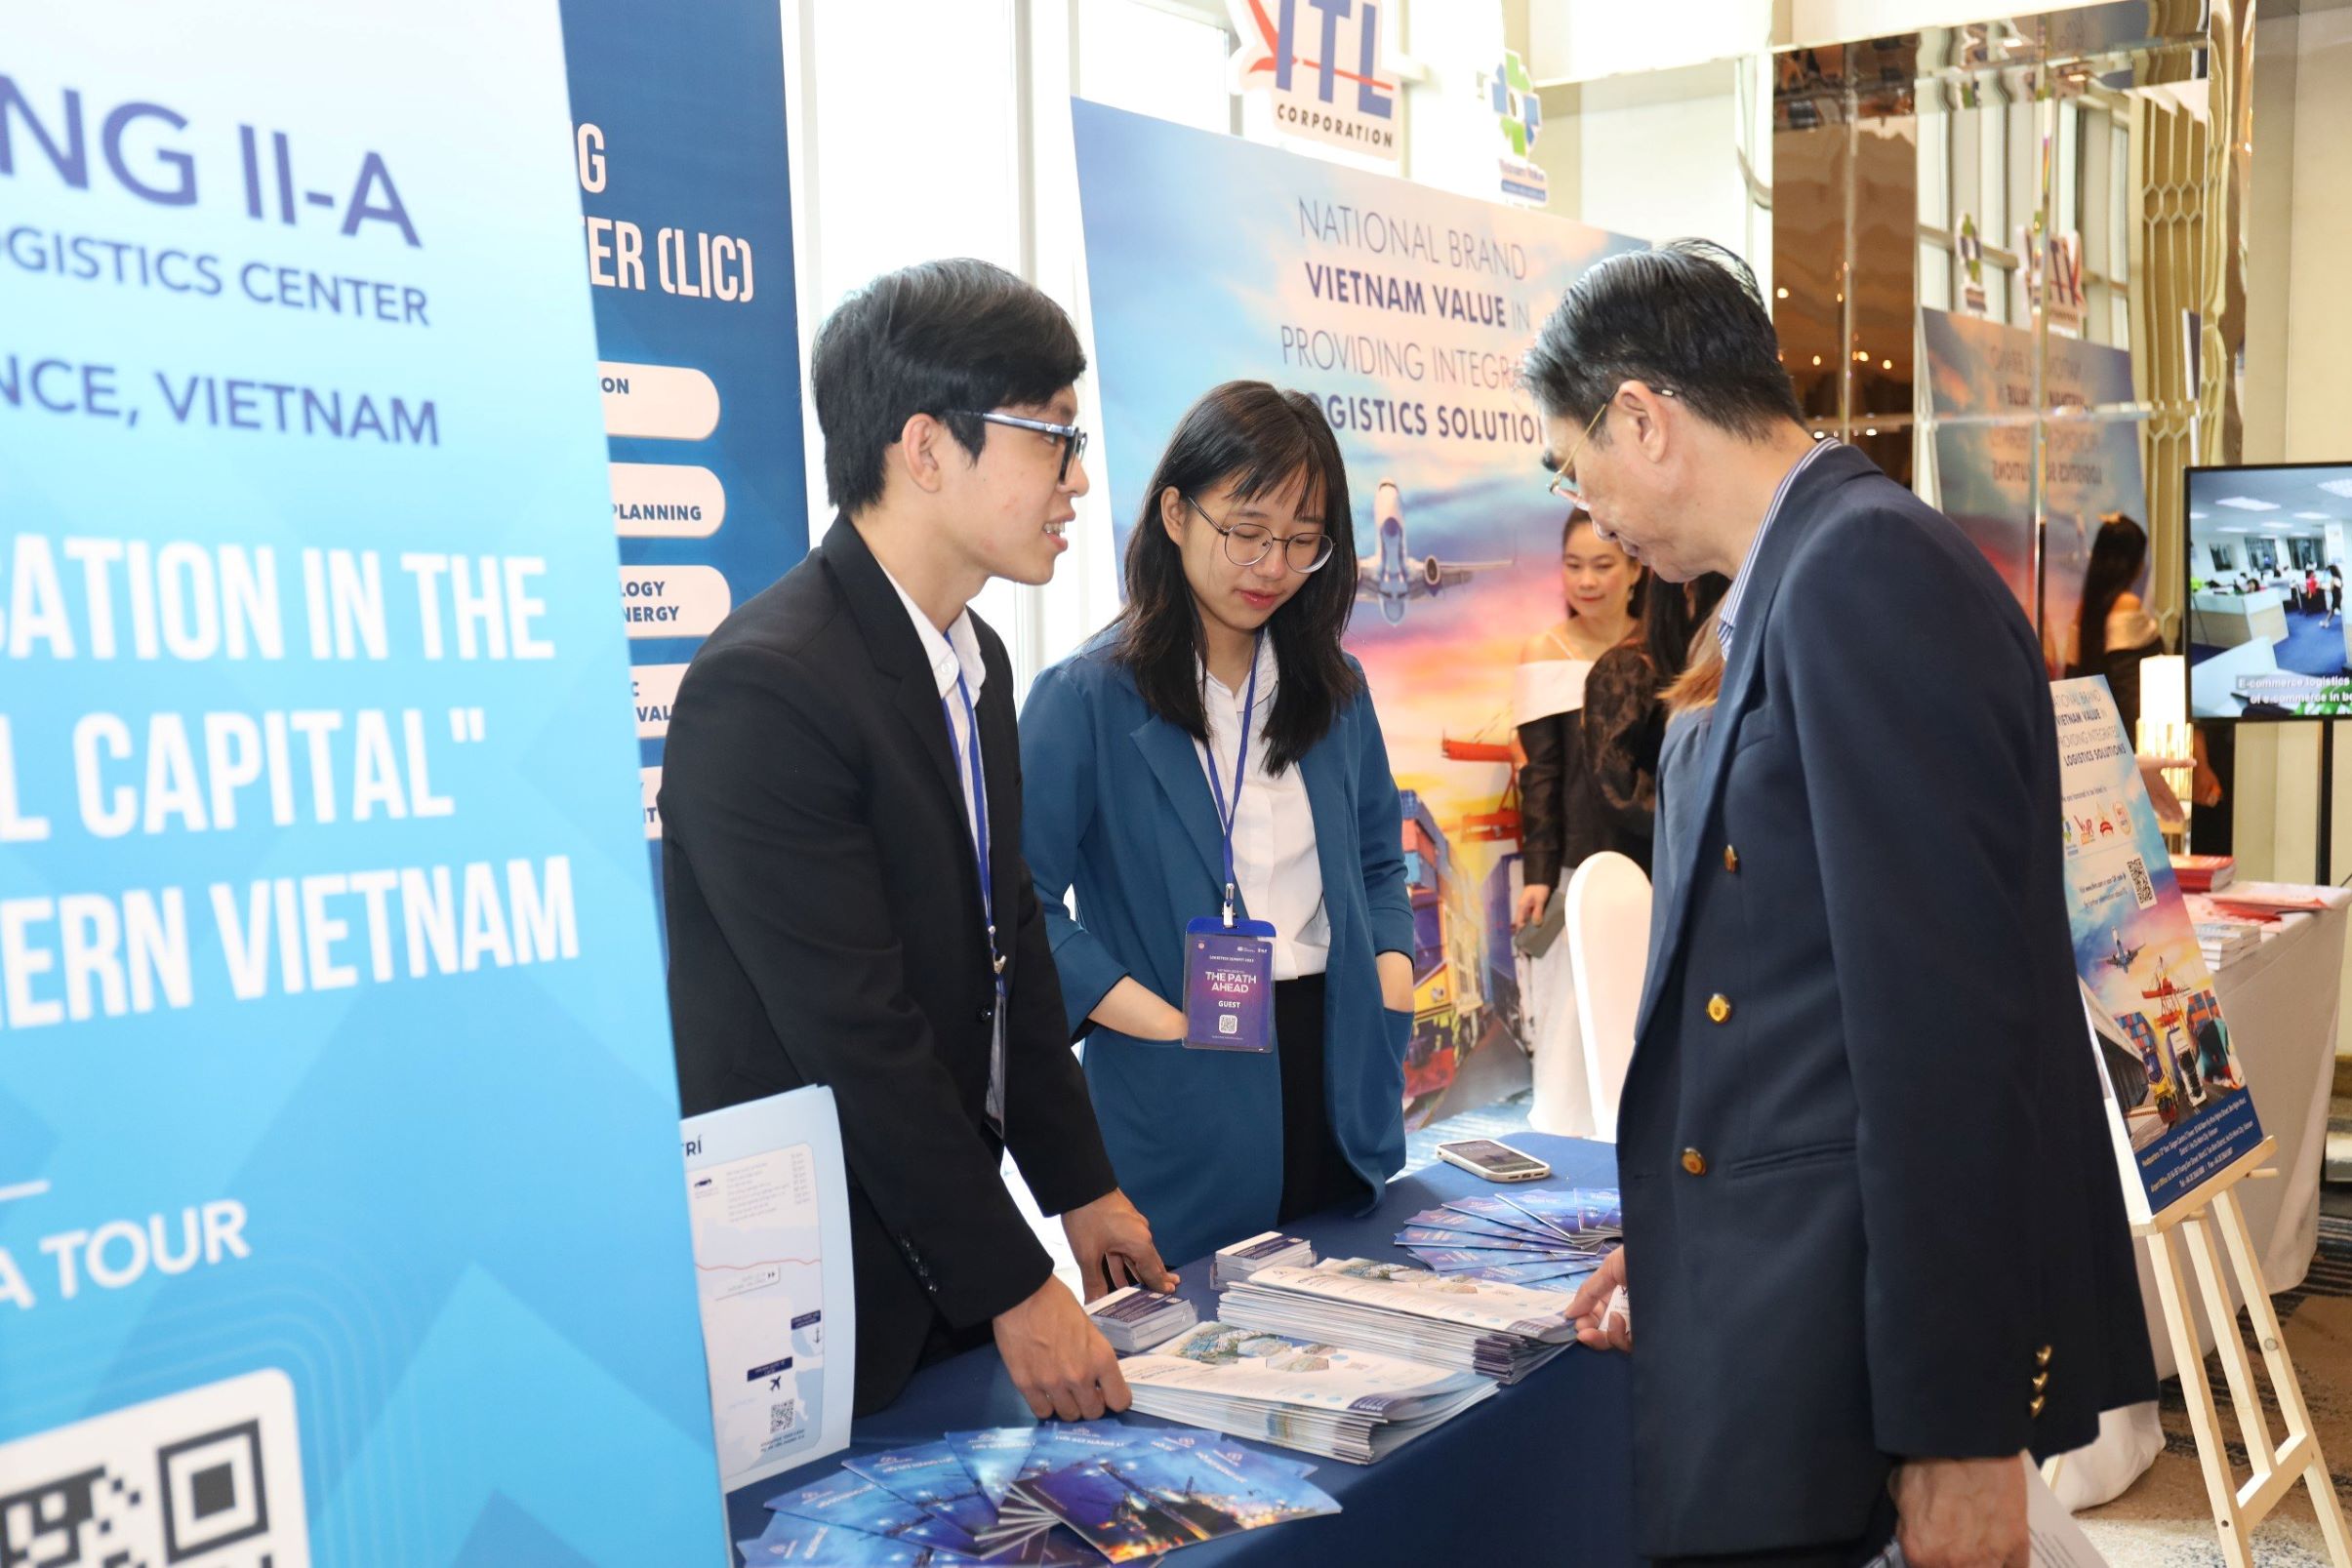 Hội nghị Logistics 2023 với chủ đề “Logistics Việt Nam - Con đường phía trước” do Báo Đầu tư và Công ty SLP Vietnam phối hợp tổ chức đang diễn ra tại TP.HCM vào sáng 5/10.